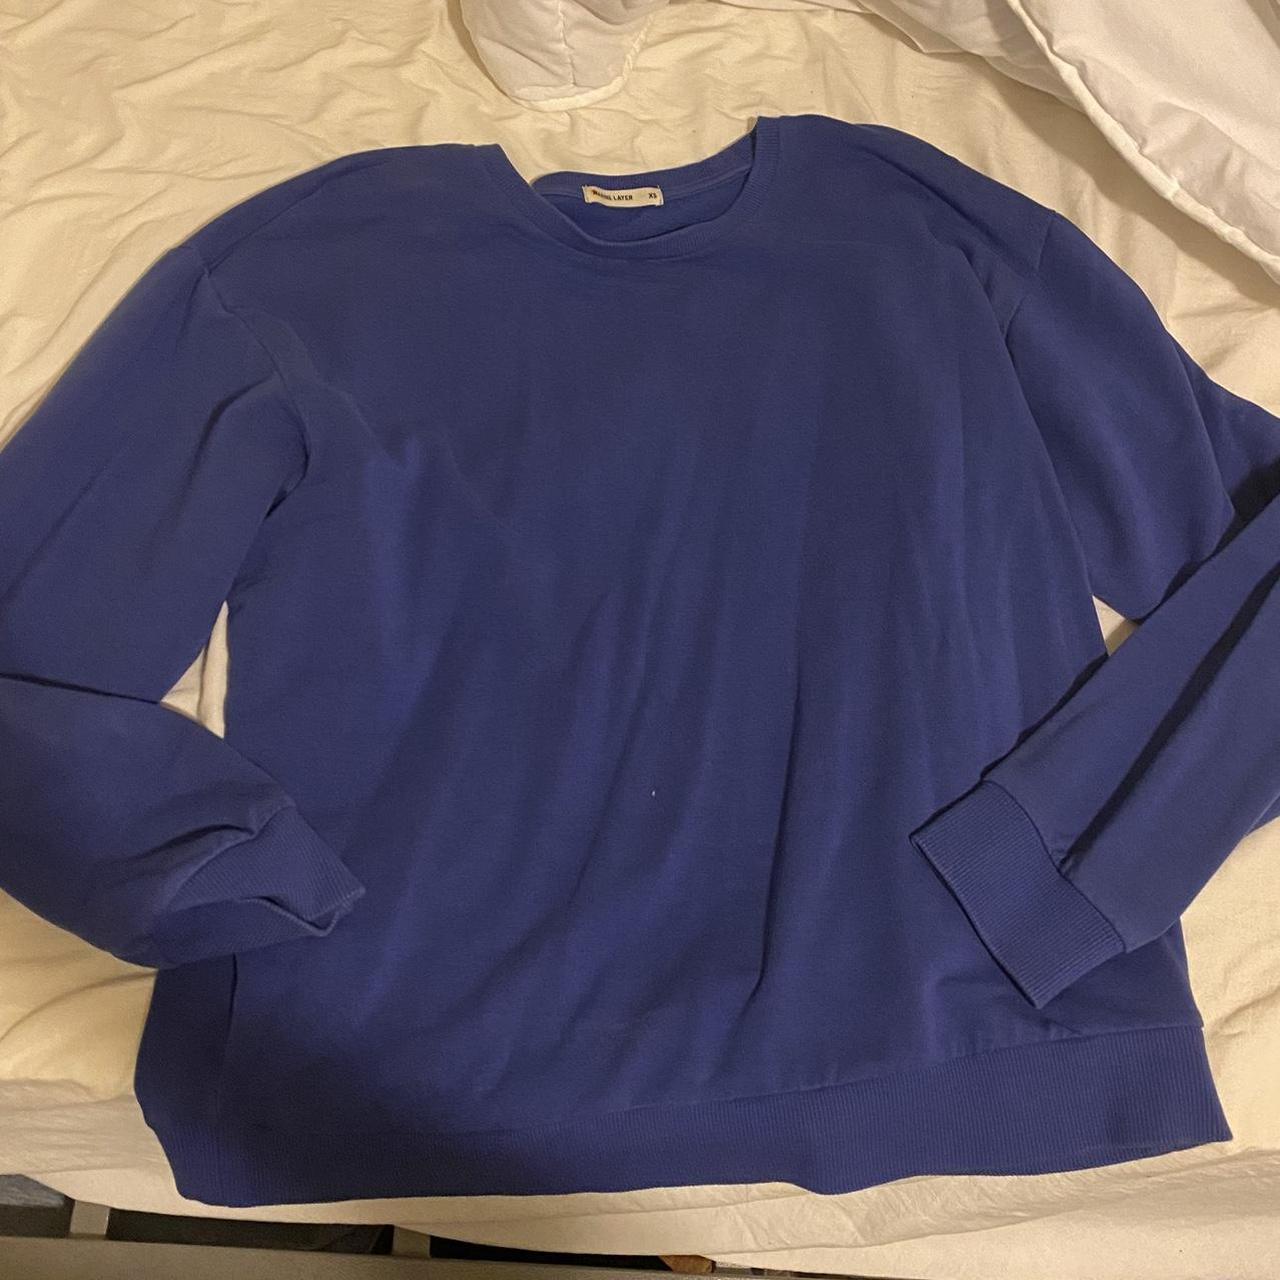 Marine Layer Women's Blue Sweatshirt